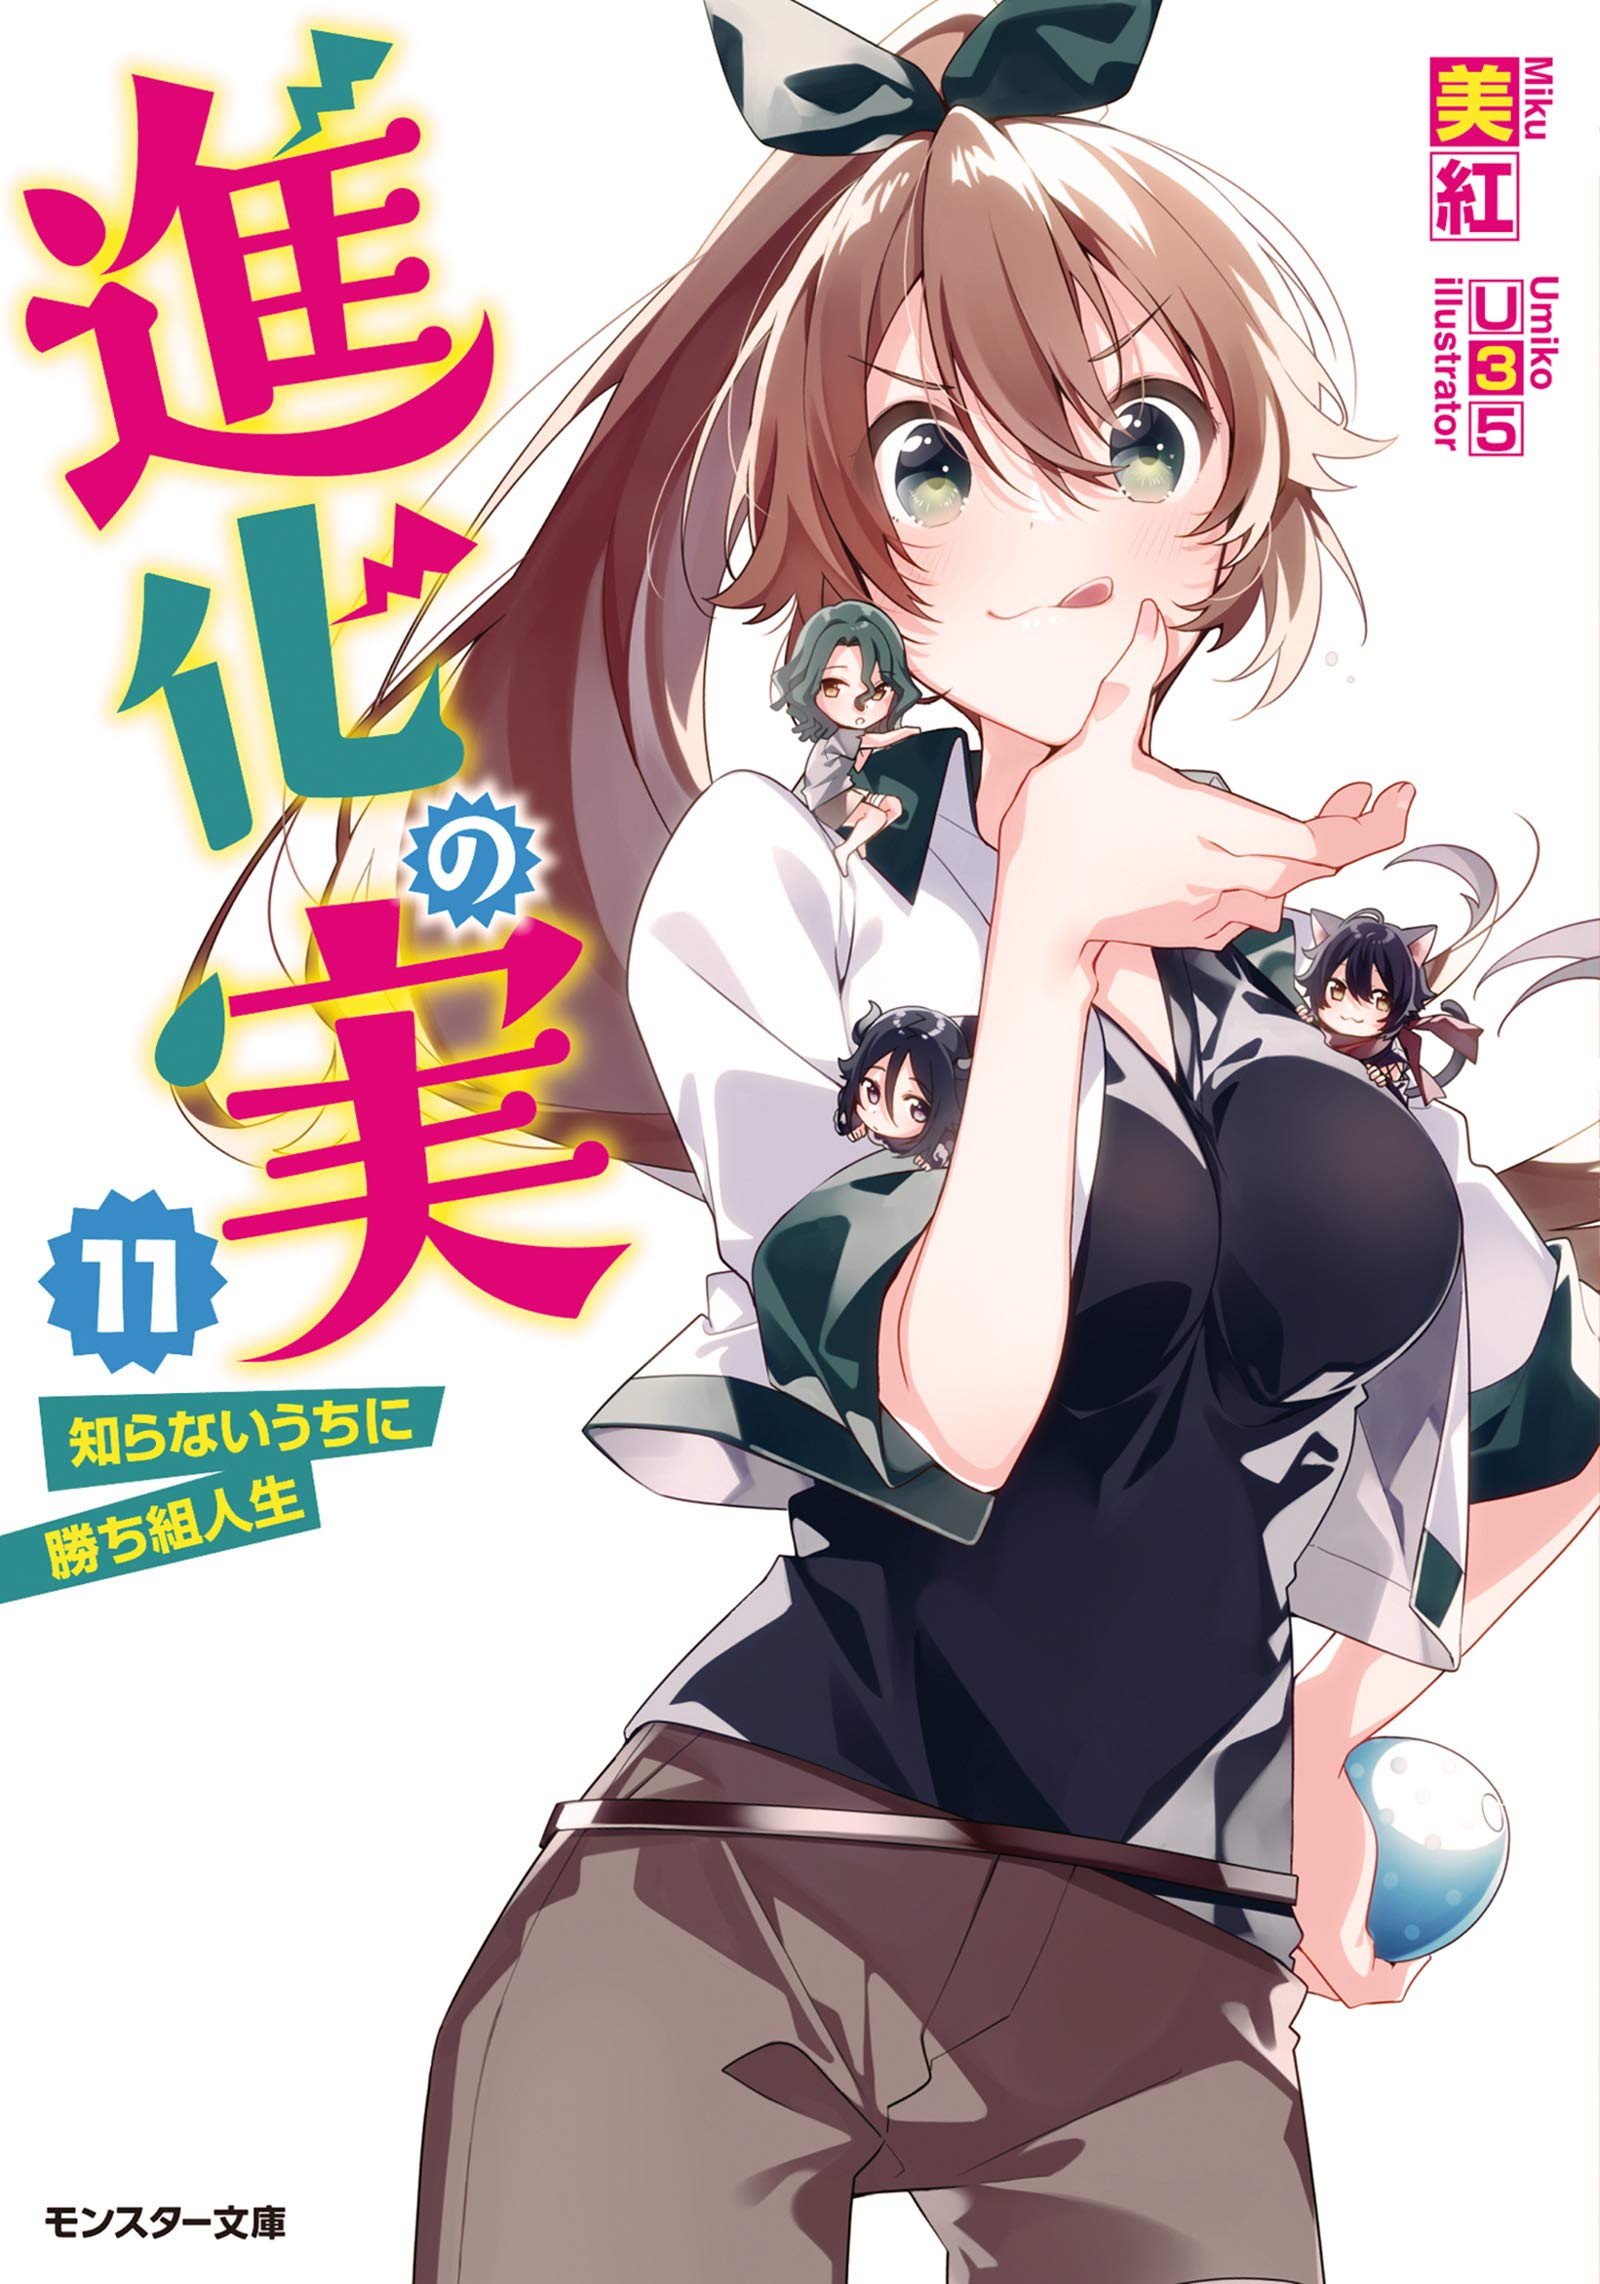 Parte 11 - Shinka No mi Shiranai EP 4 #Anime #shinkanomishiranaiuchini